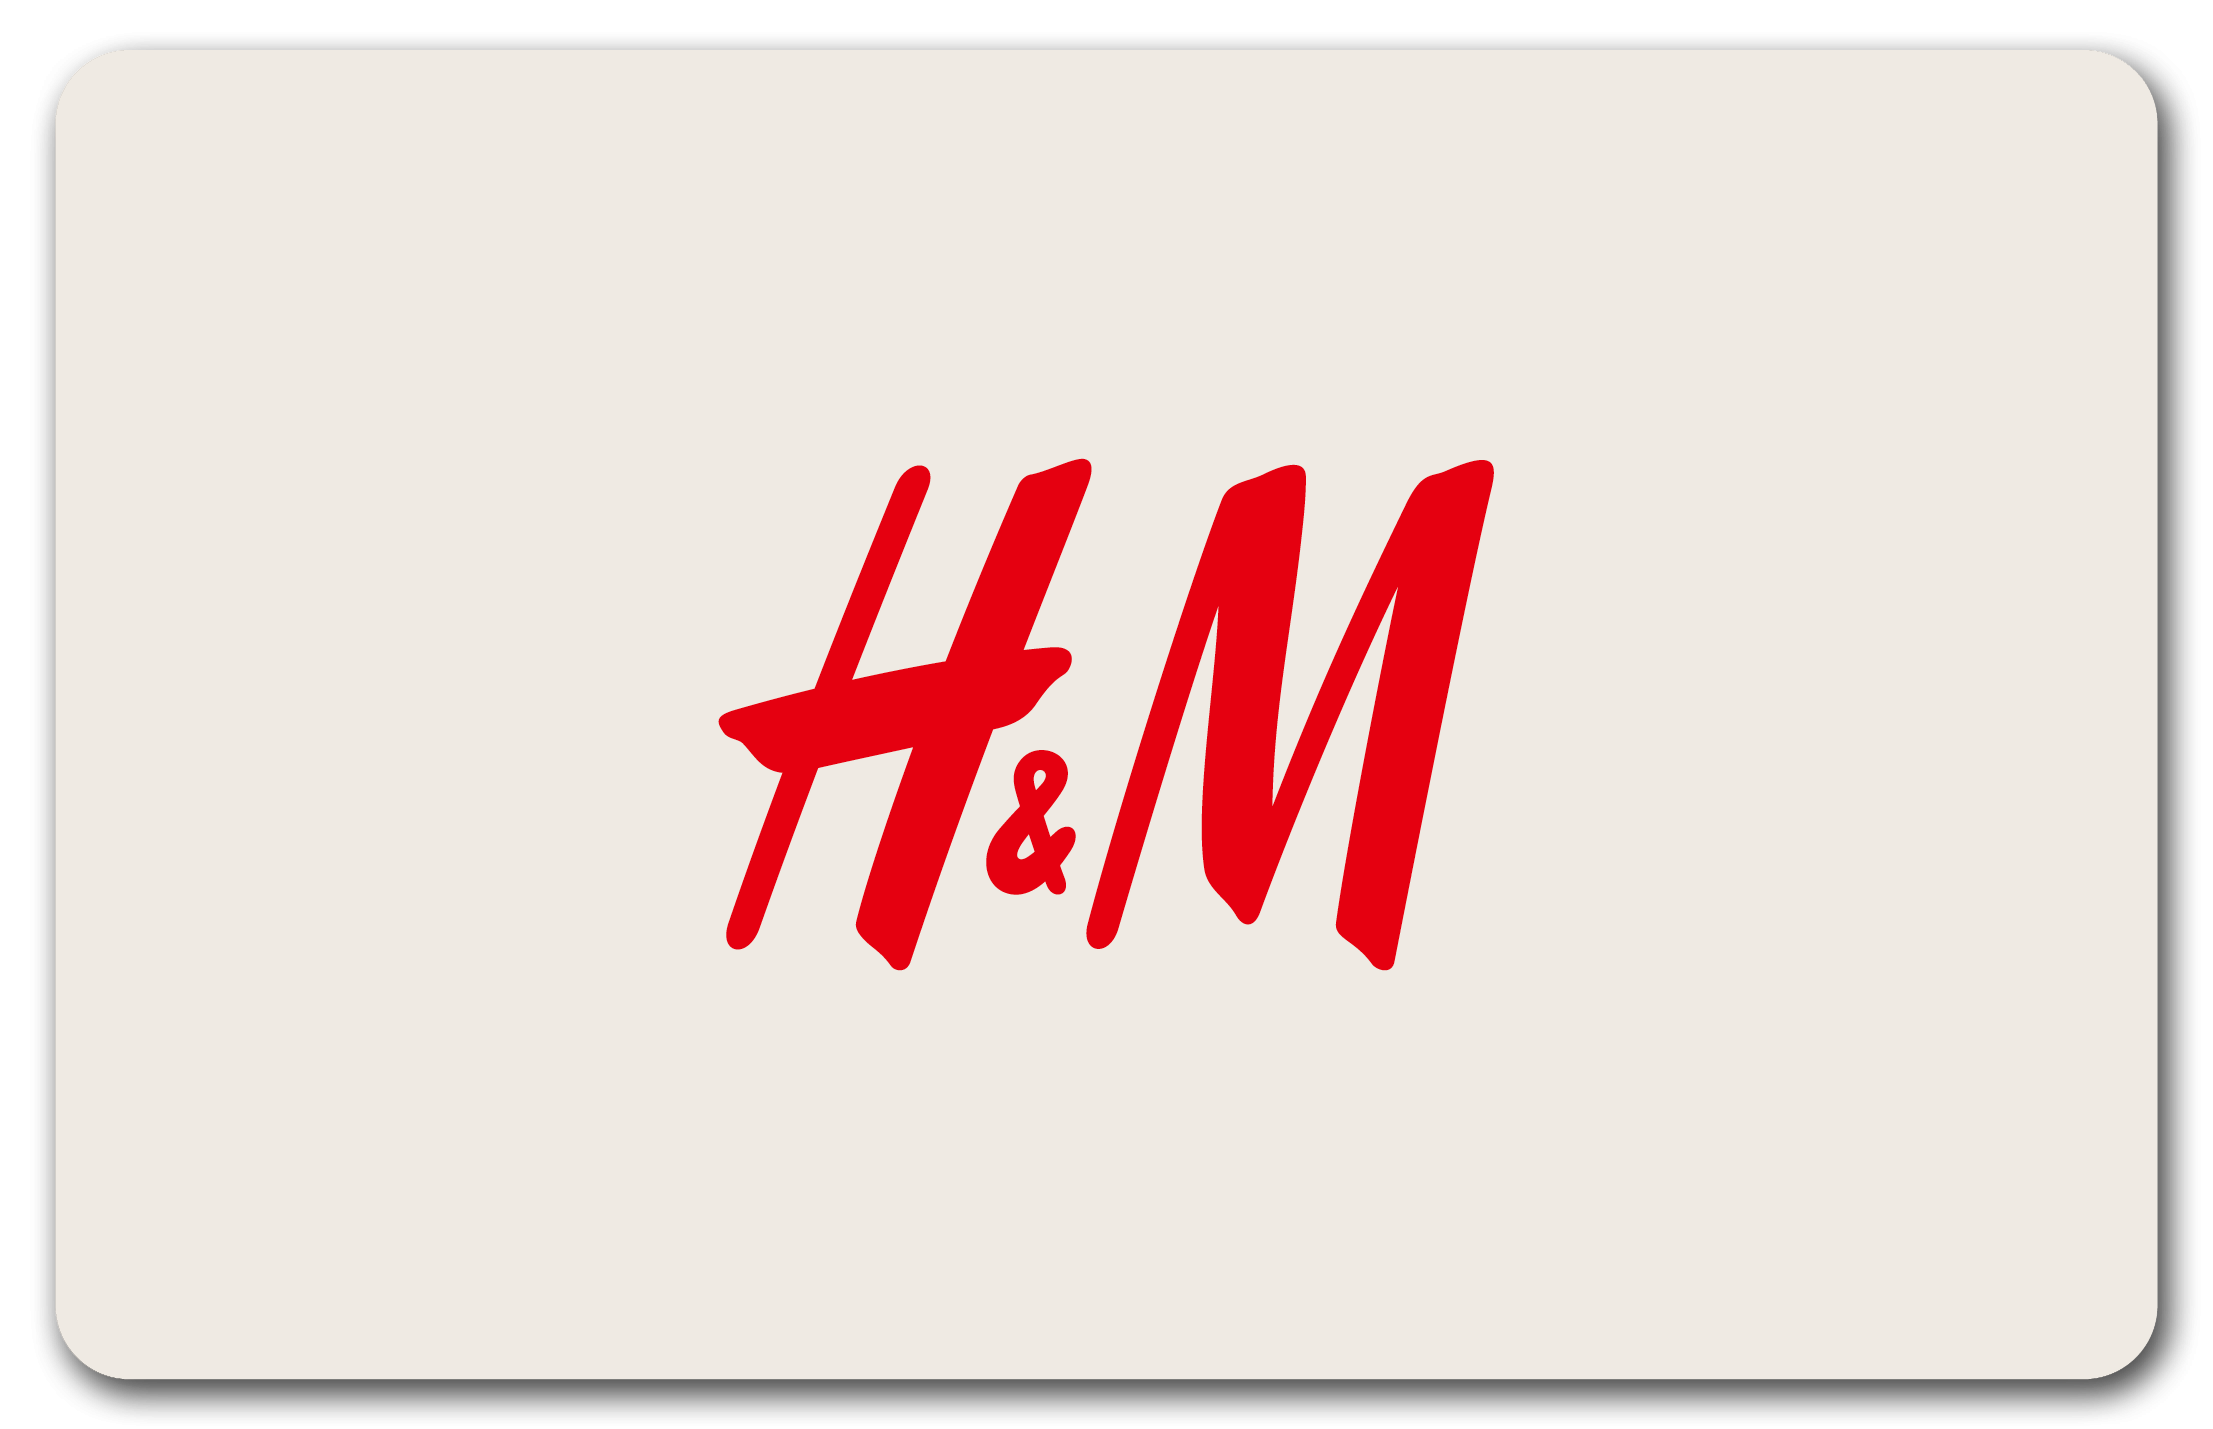 H&M Aix-en-Provence